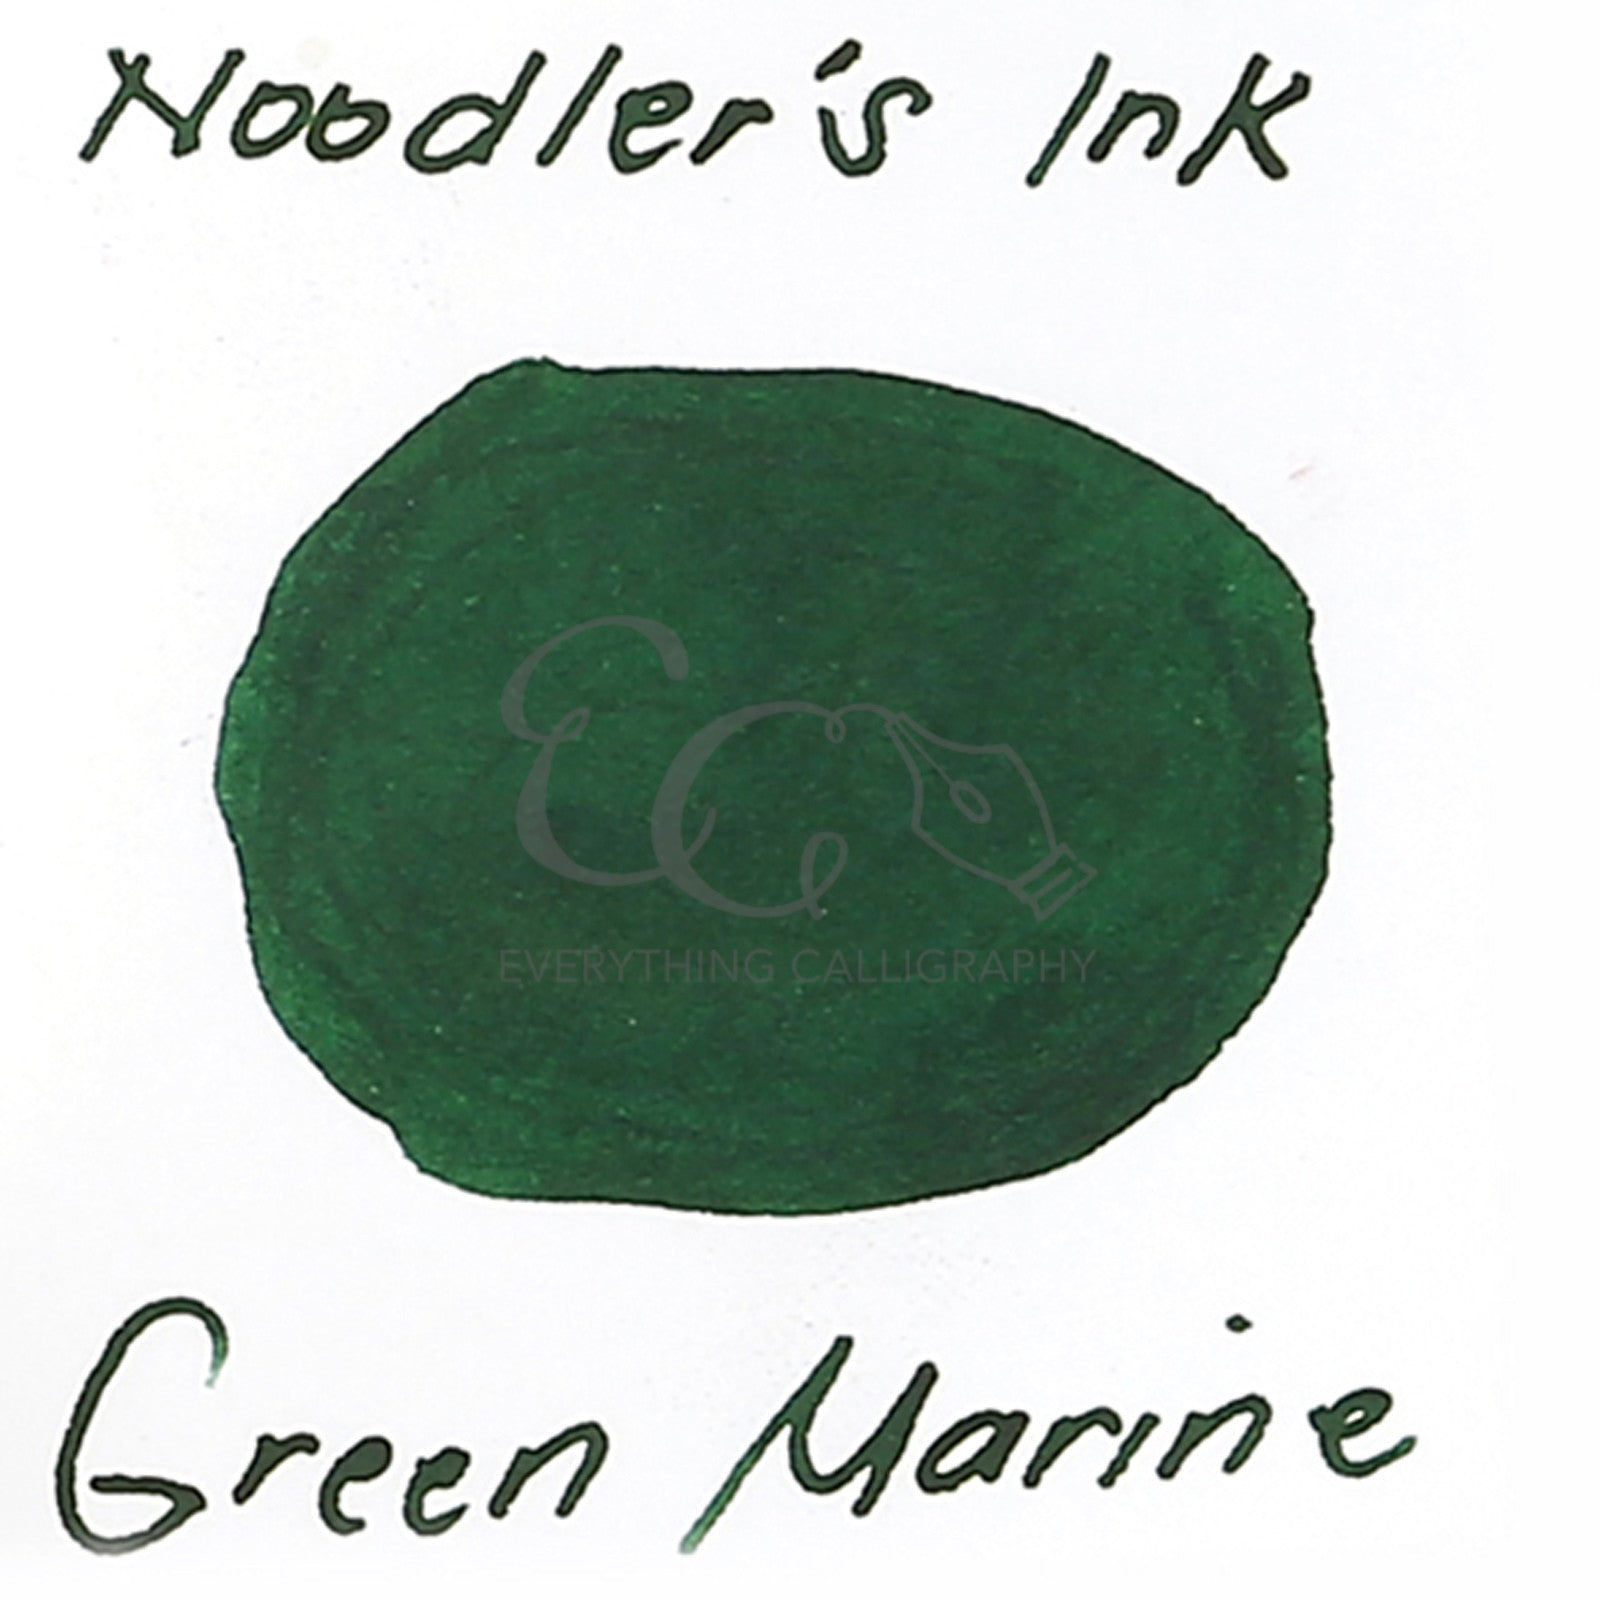 Noodler's Green Marine